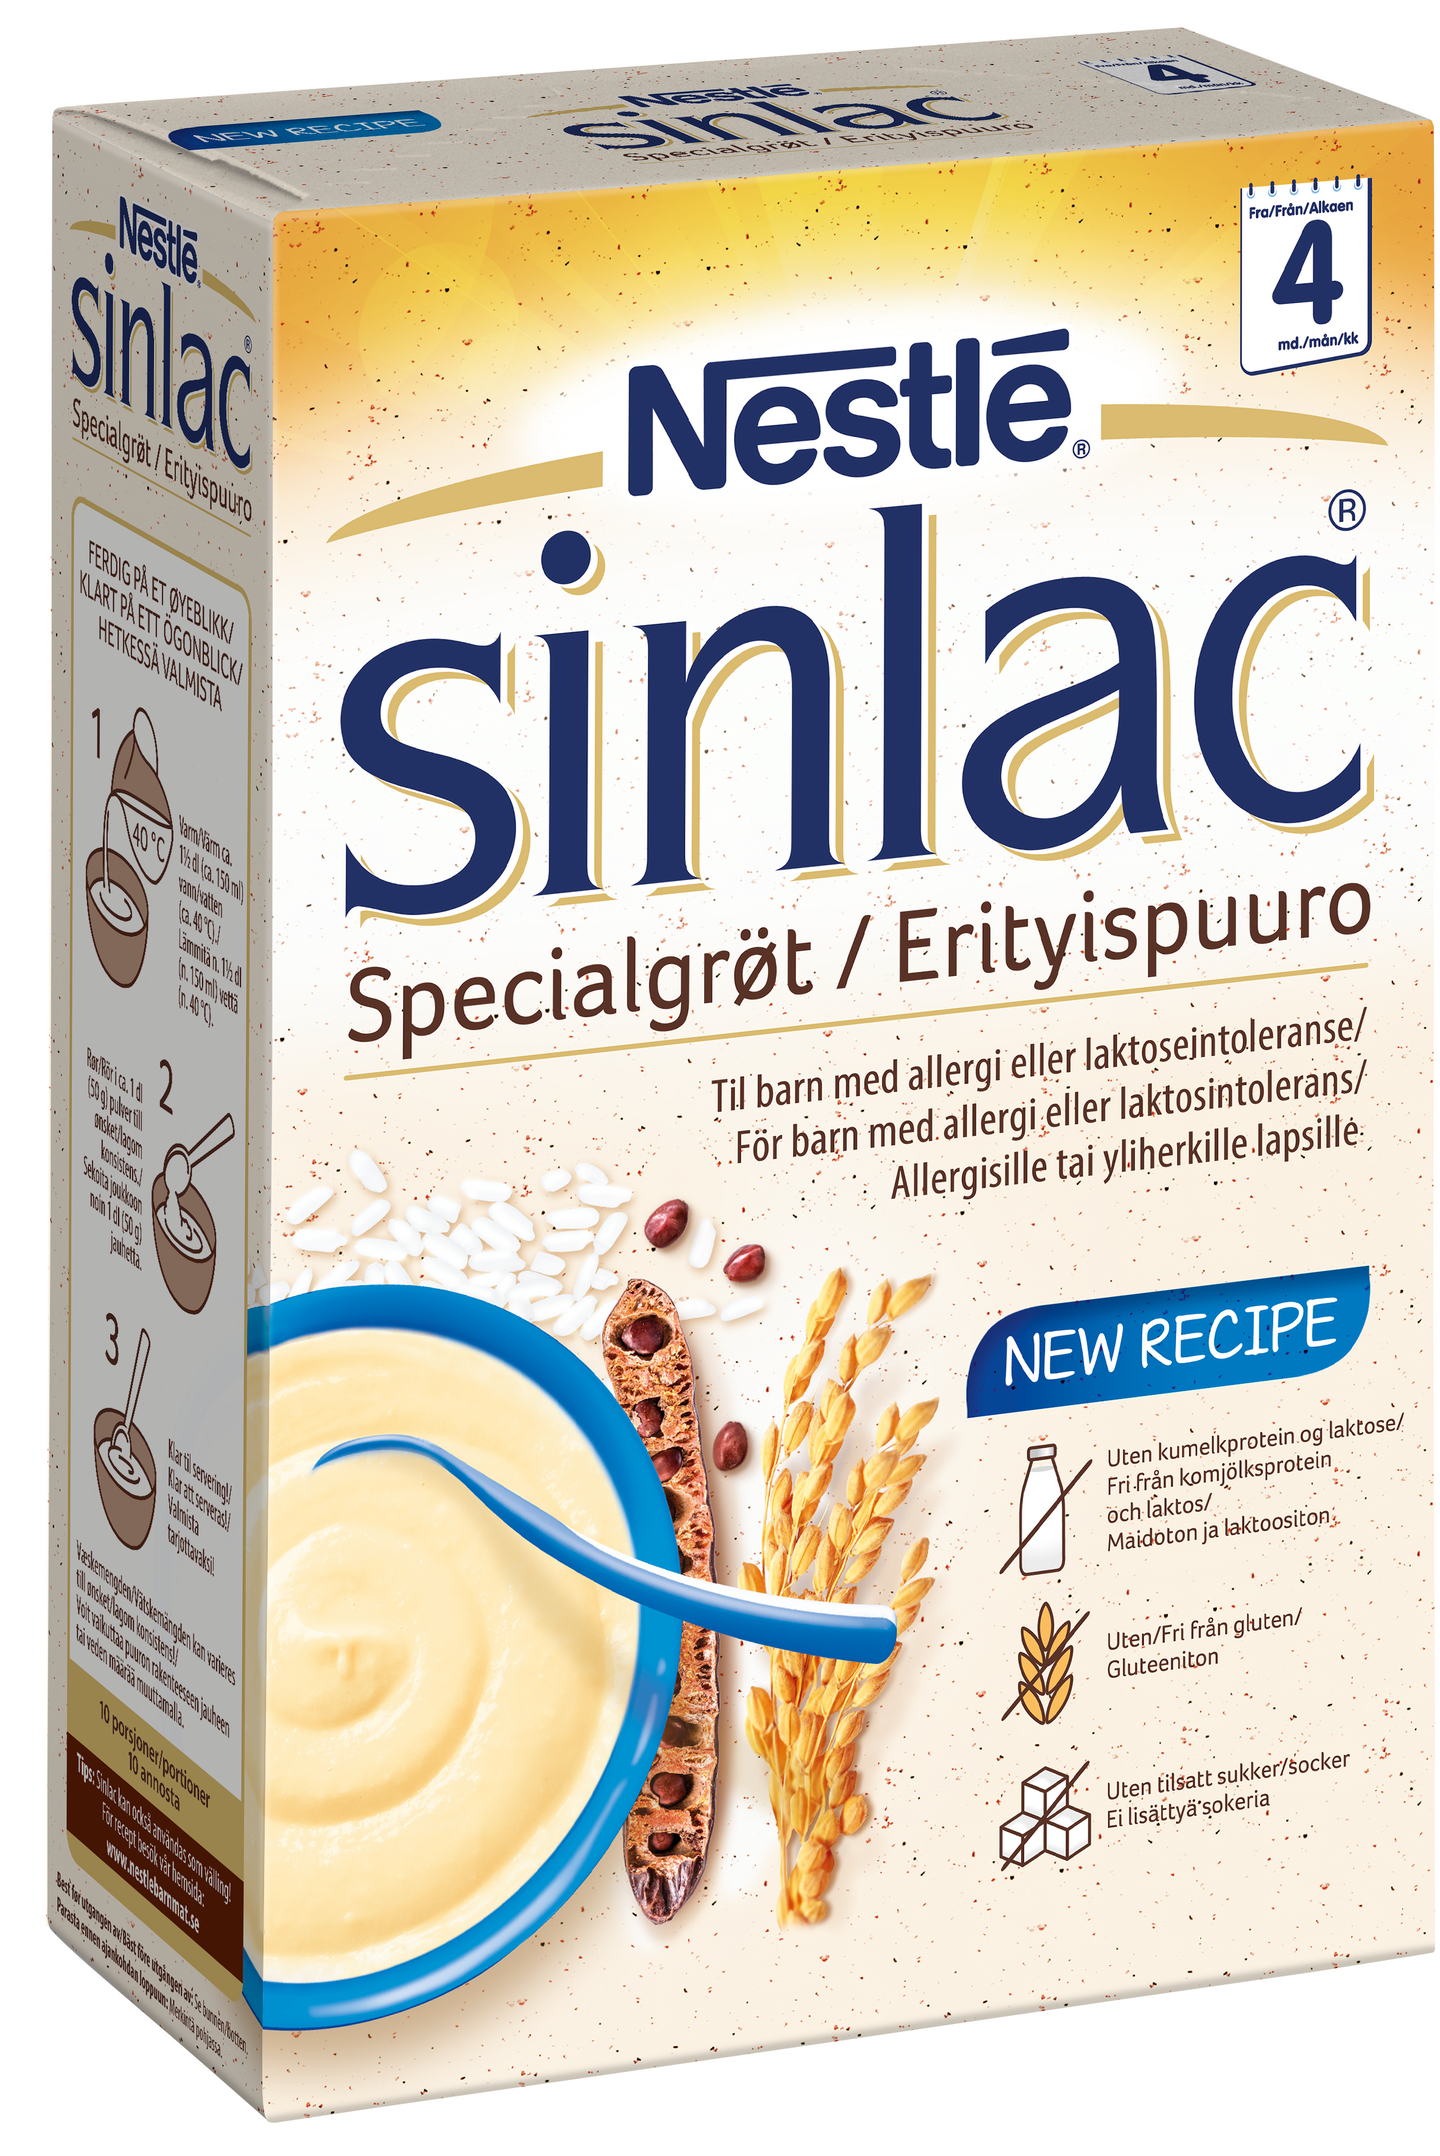 Nestlé Sinlac 500g Maidoton ja gluteeniton Riisipuuro 4kk — HoReCa-tukku  Kespro